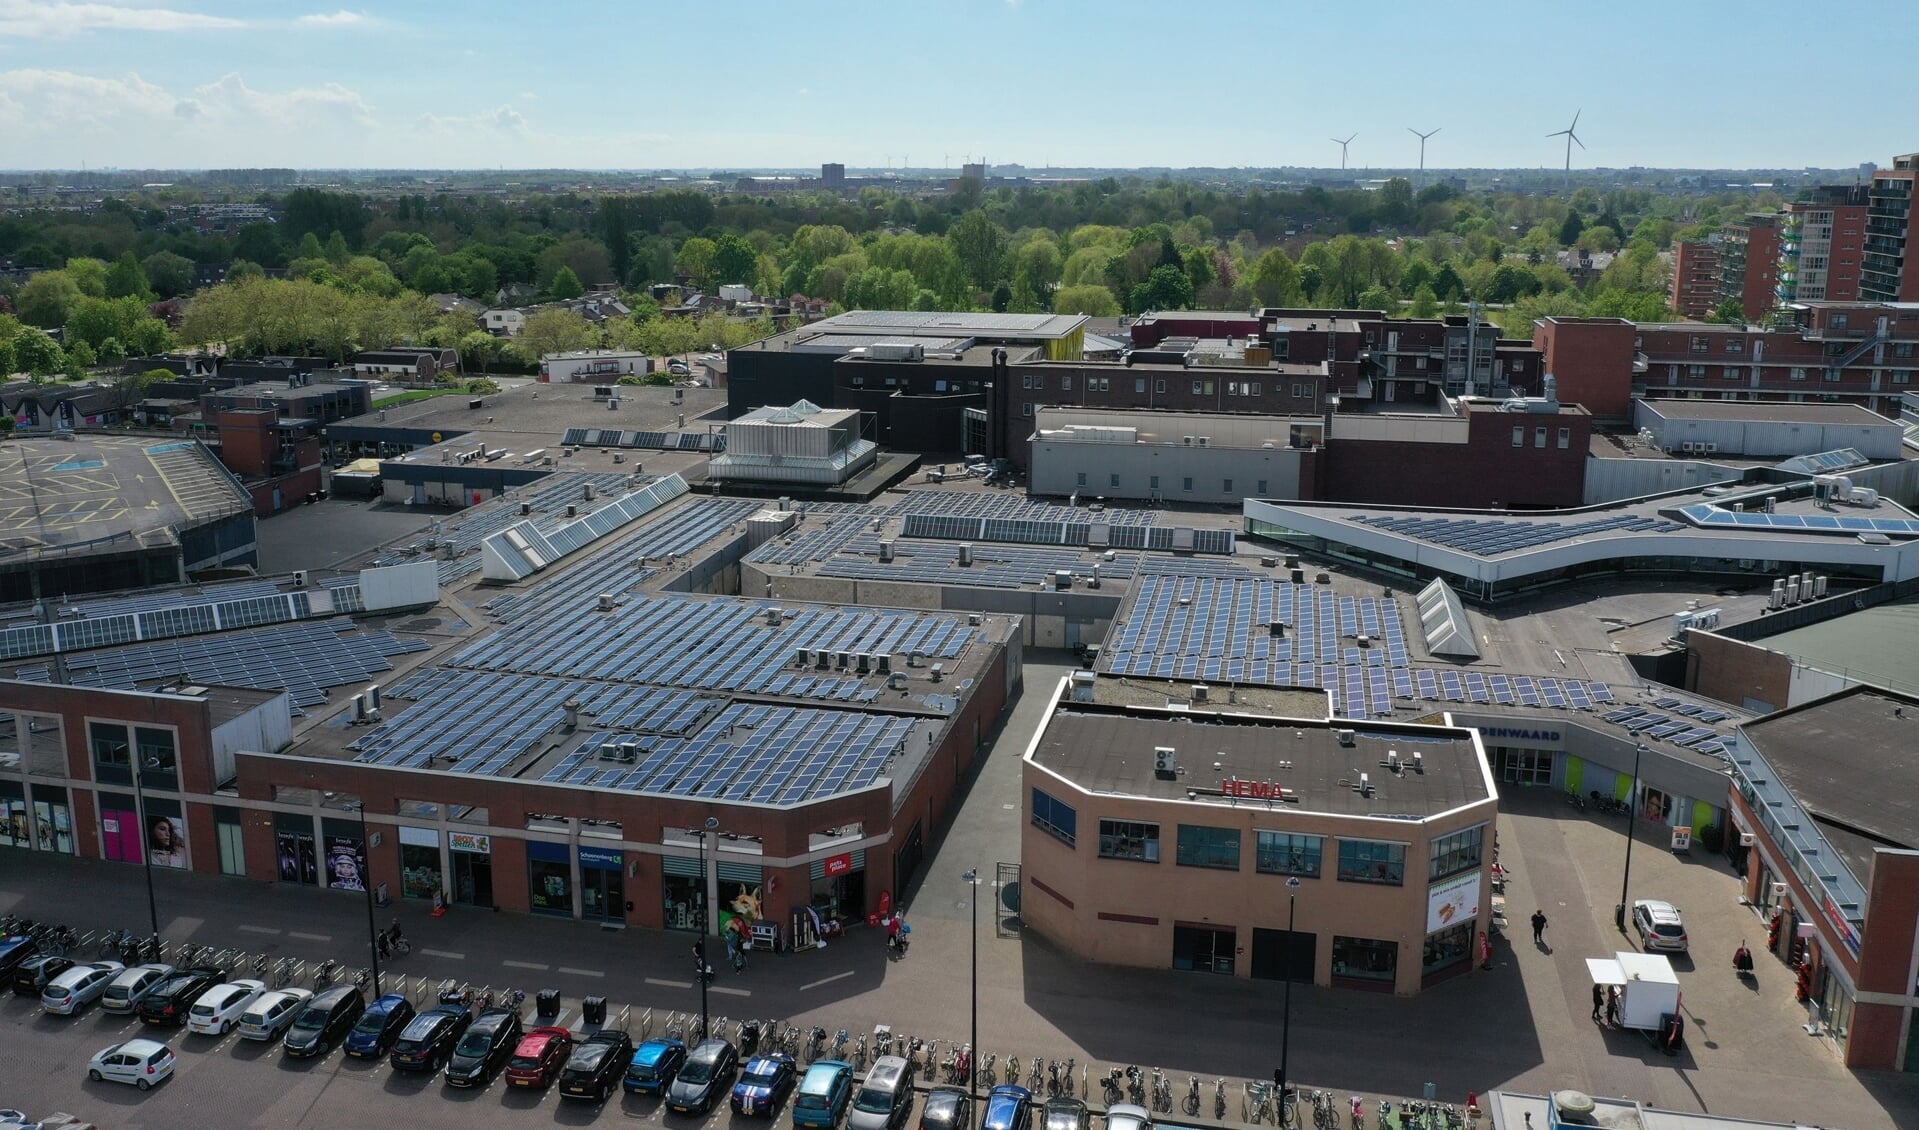 Het dak van winkelcentrum Middenwaard is bedekt met zonnepanelen